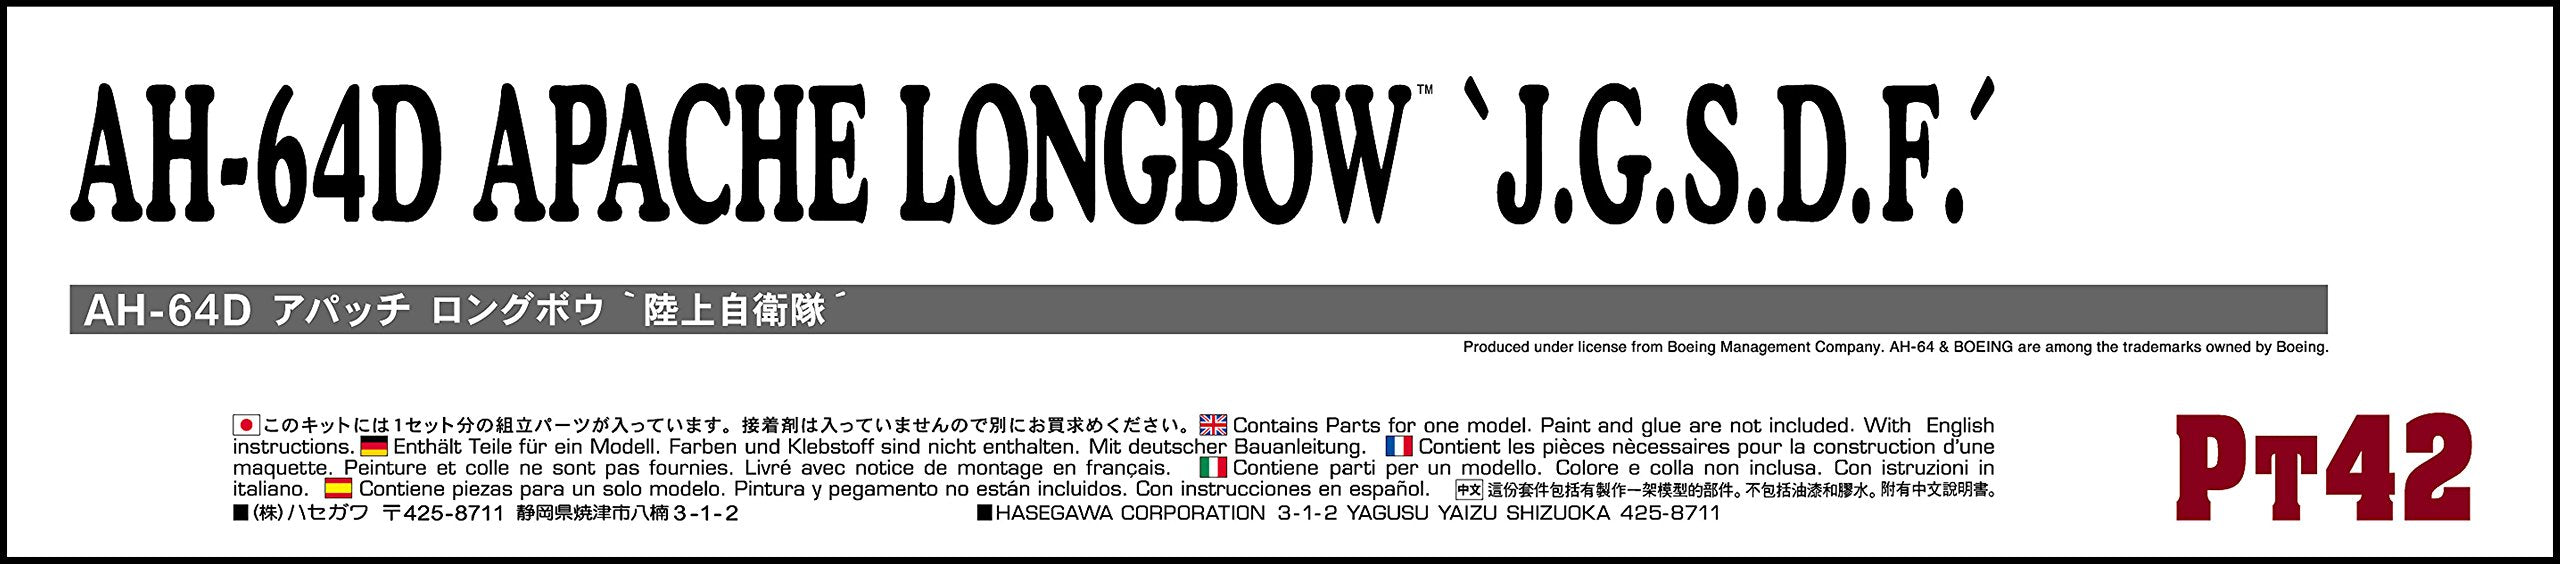 HASEGAWA 1/48 Ah-64D Apache Longbow JGSDF Plastikmodell